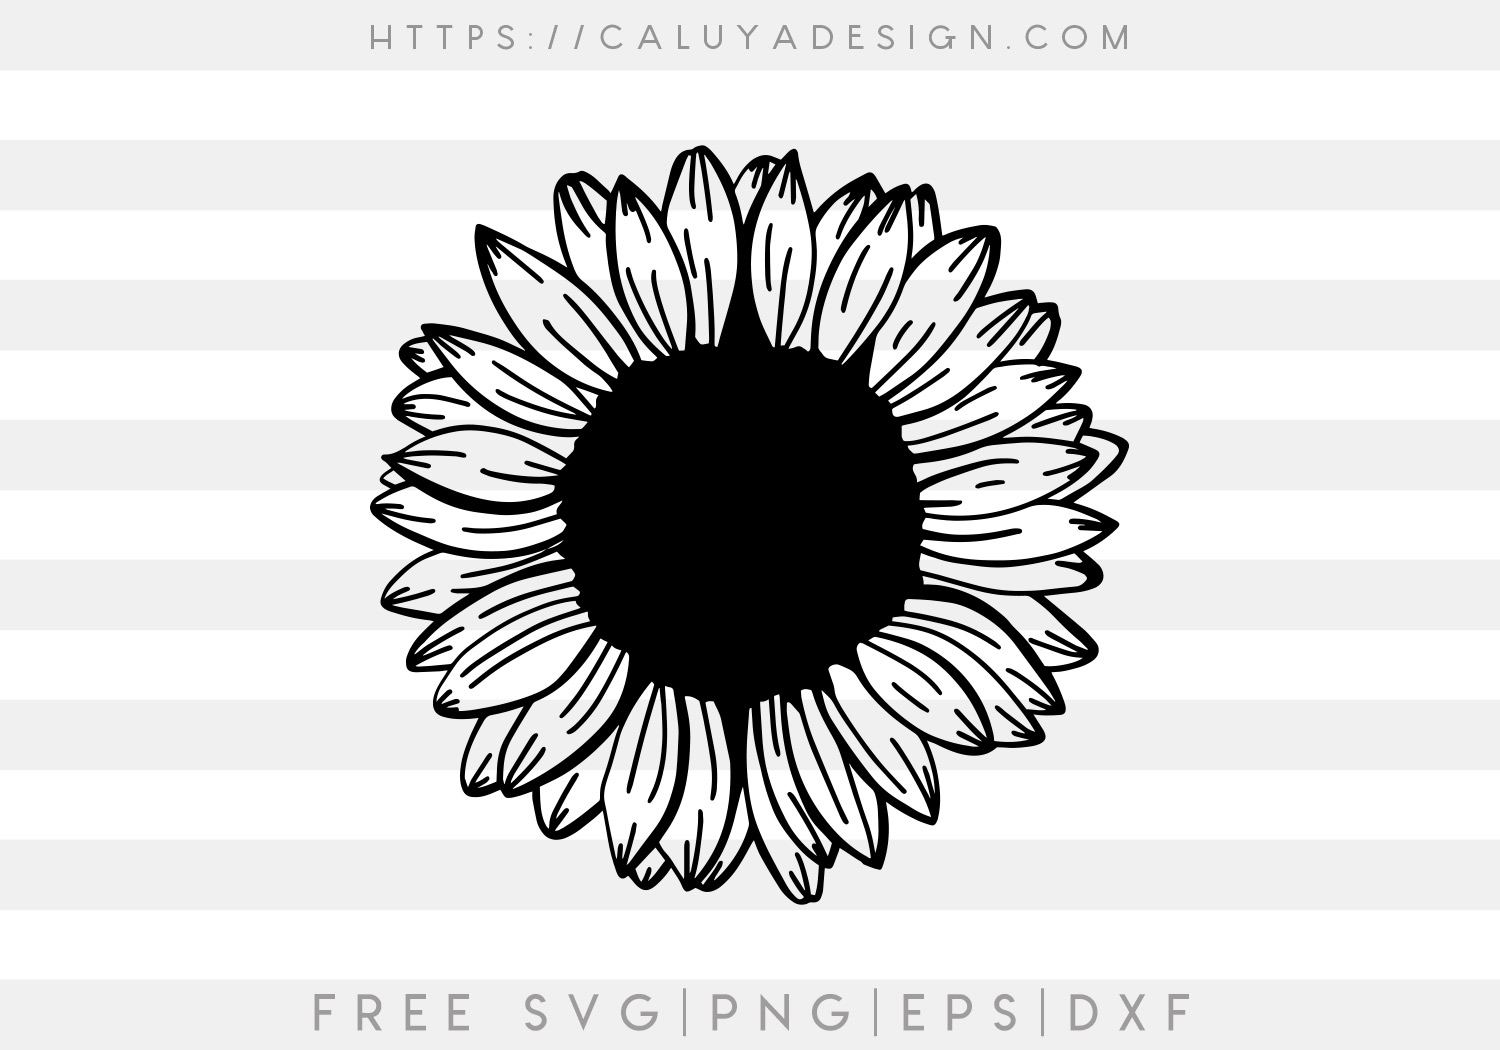 Free Handwritten Sunflower SVG